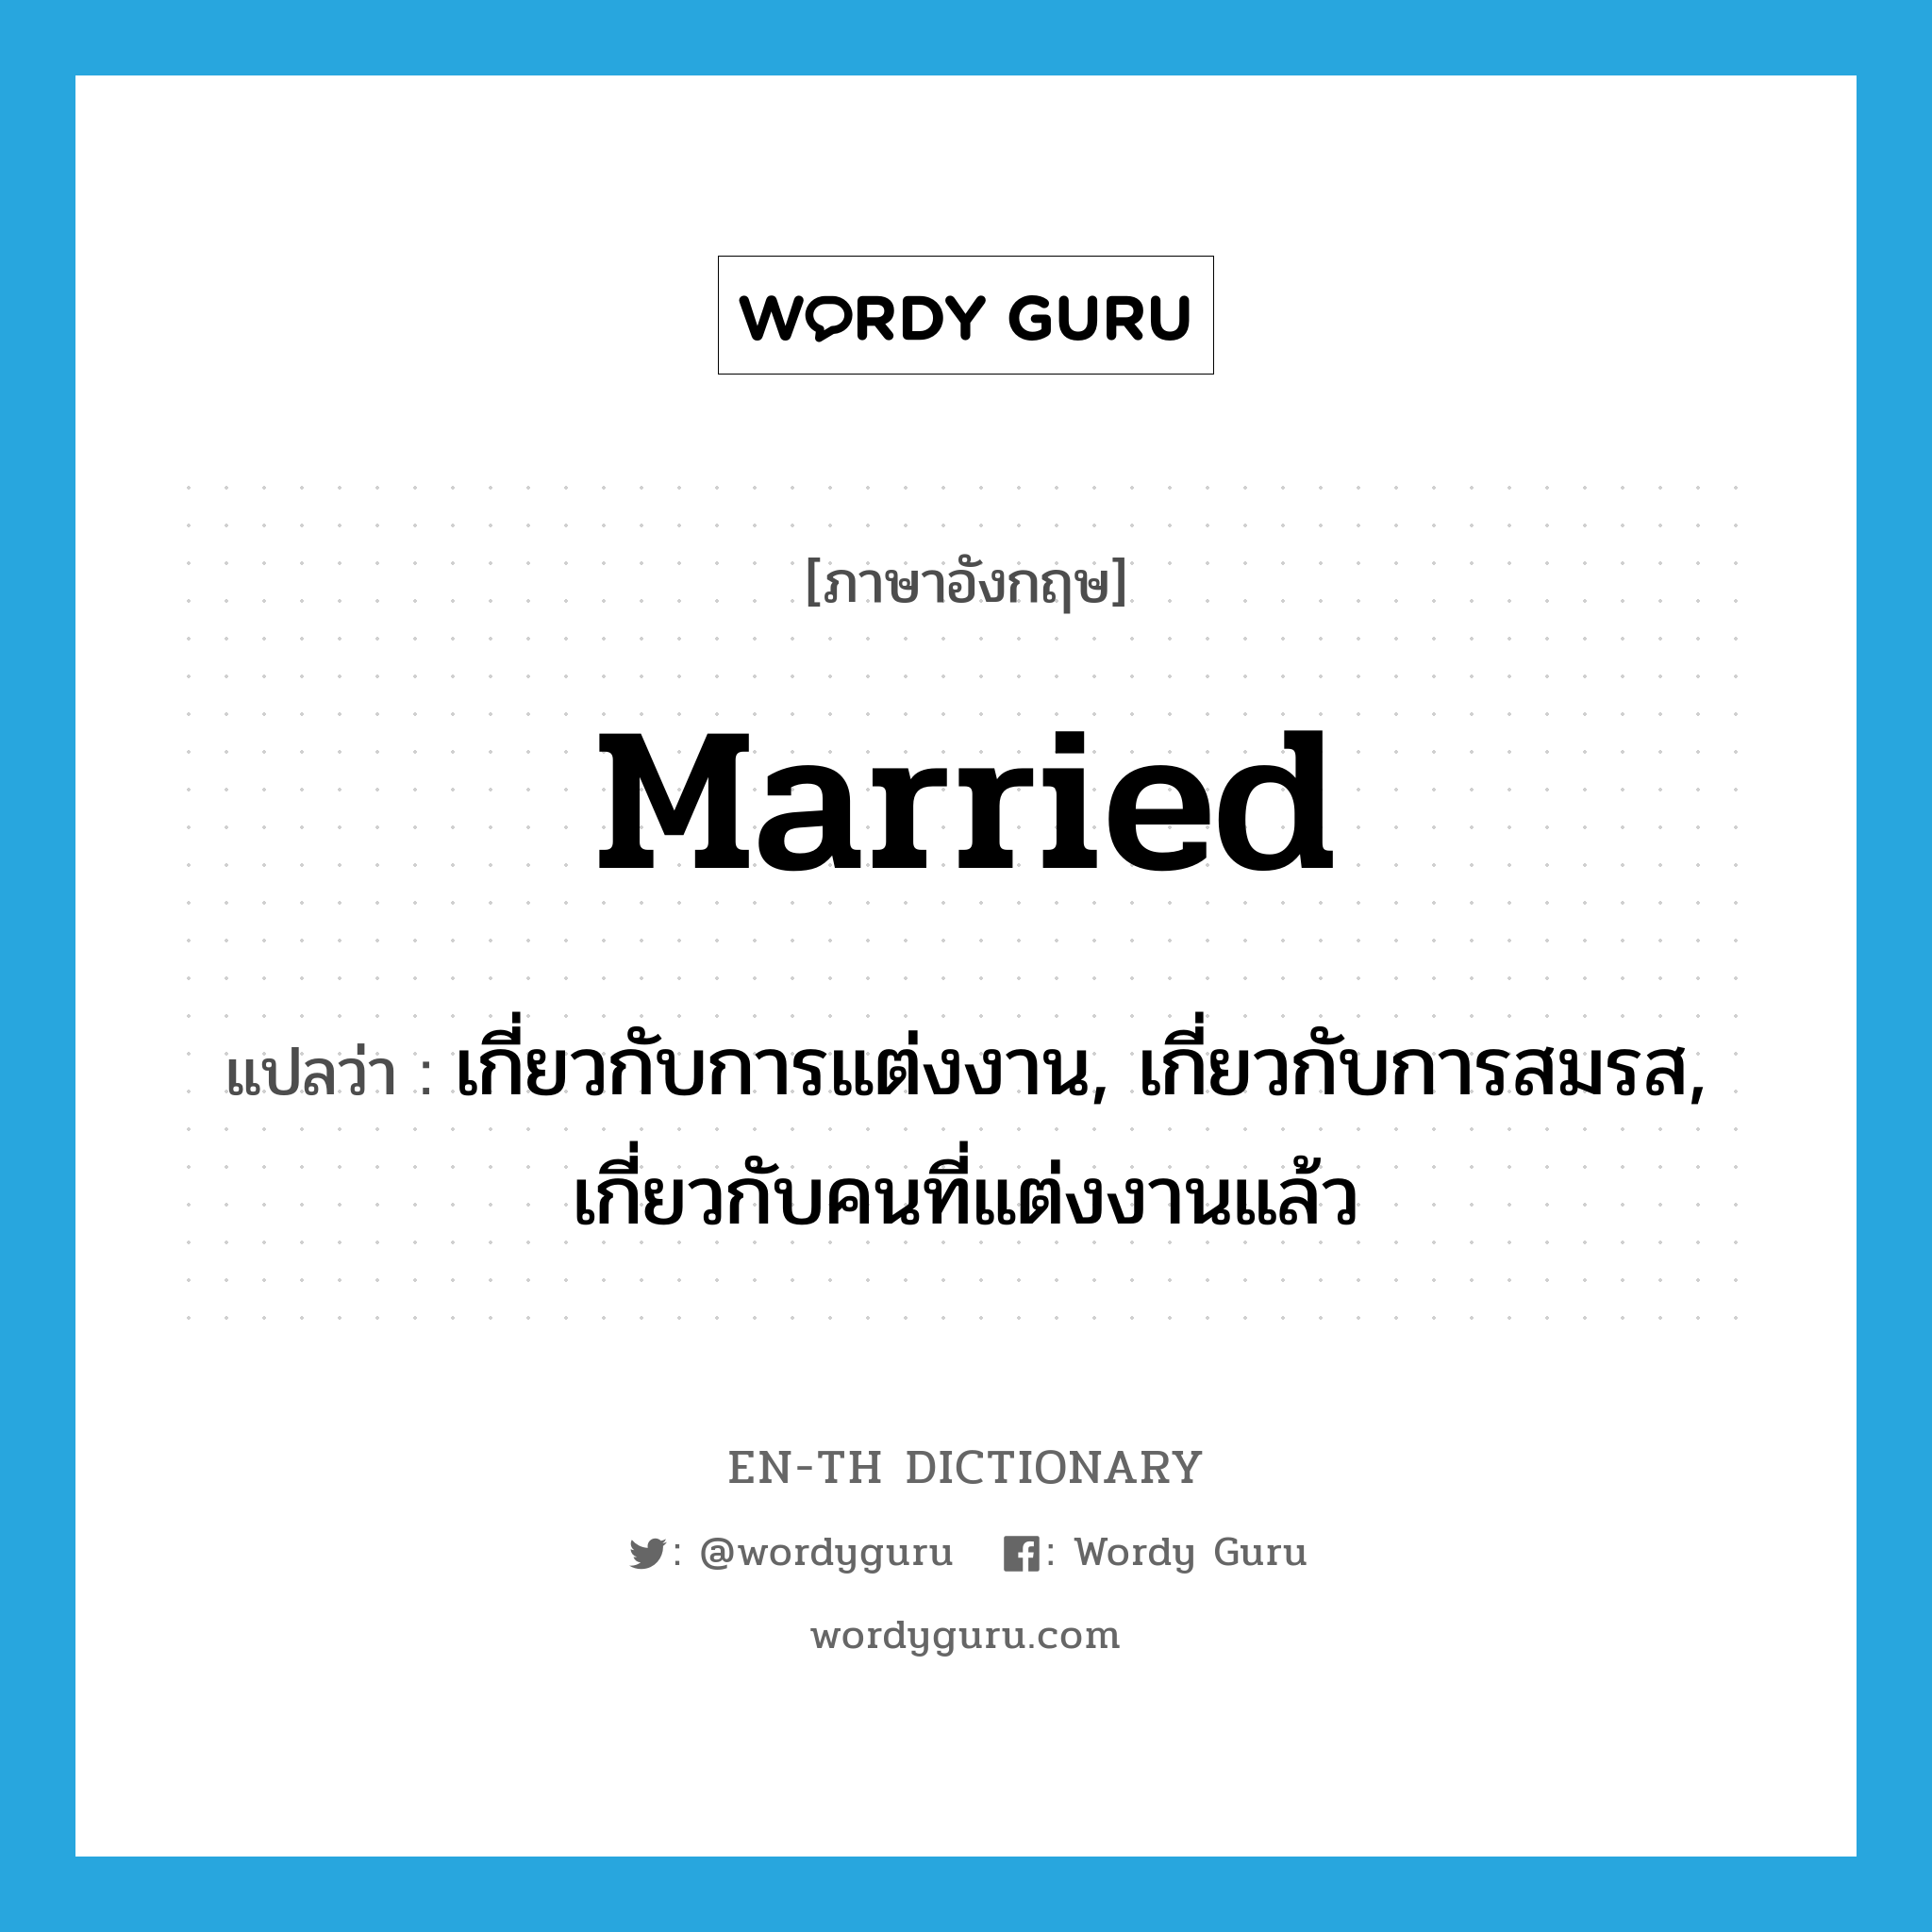 เกี่ยวกับการแต่งงาน, เกี่ยวกับการสมรส, เกี่ยวกับคนที่แต่งงานแล้ว ภาษาอังกฤษ?, คำศัพท์ภาษาอังกฤษ เกี่ยวกับการแต่งงาน, เกี่ยวกับการสมรส, เกี่ยวกับคนที่แต่งงานแล้ว แปลว่า married ประเภท ADJ หมวด ADJ